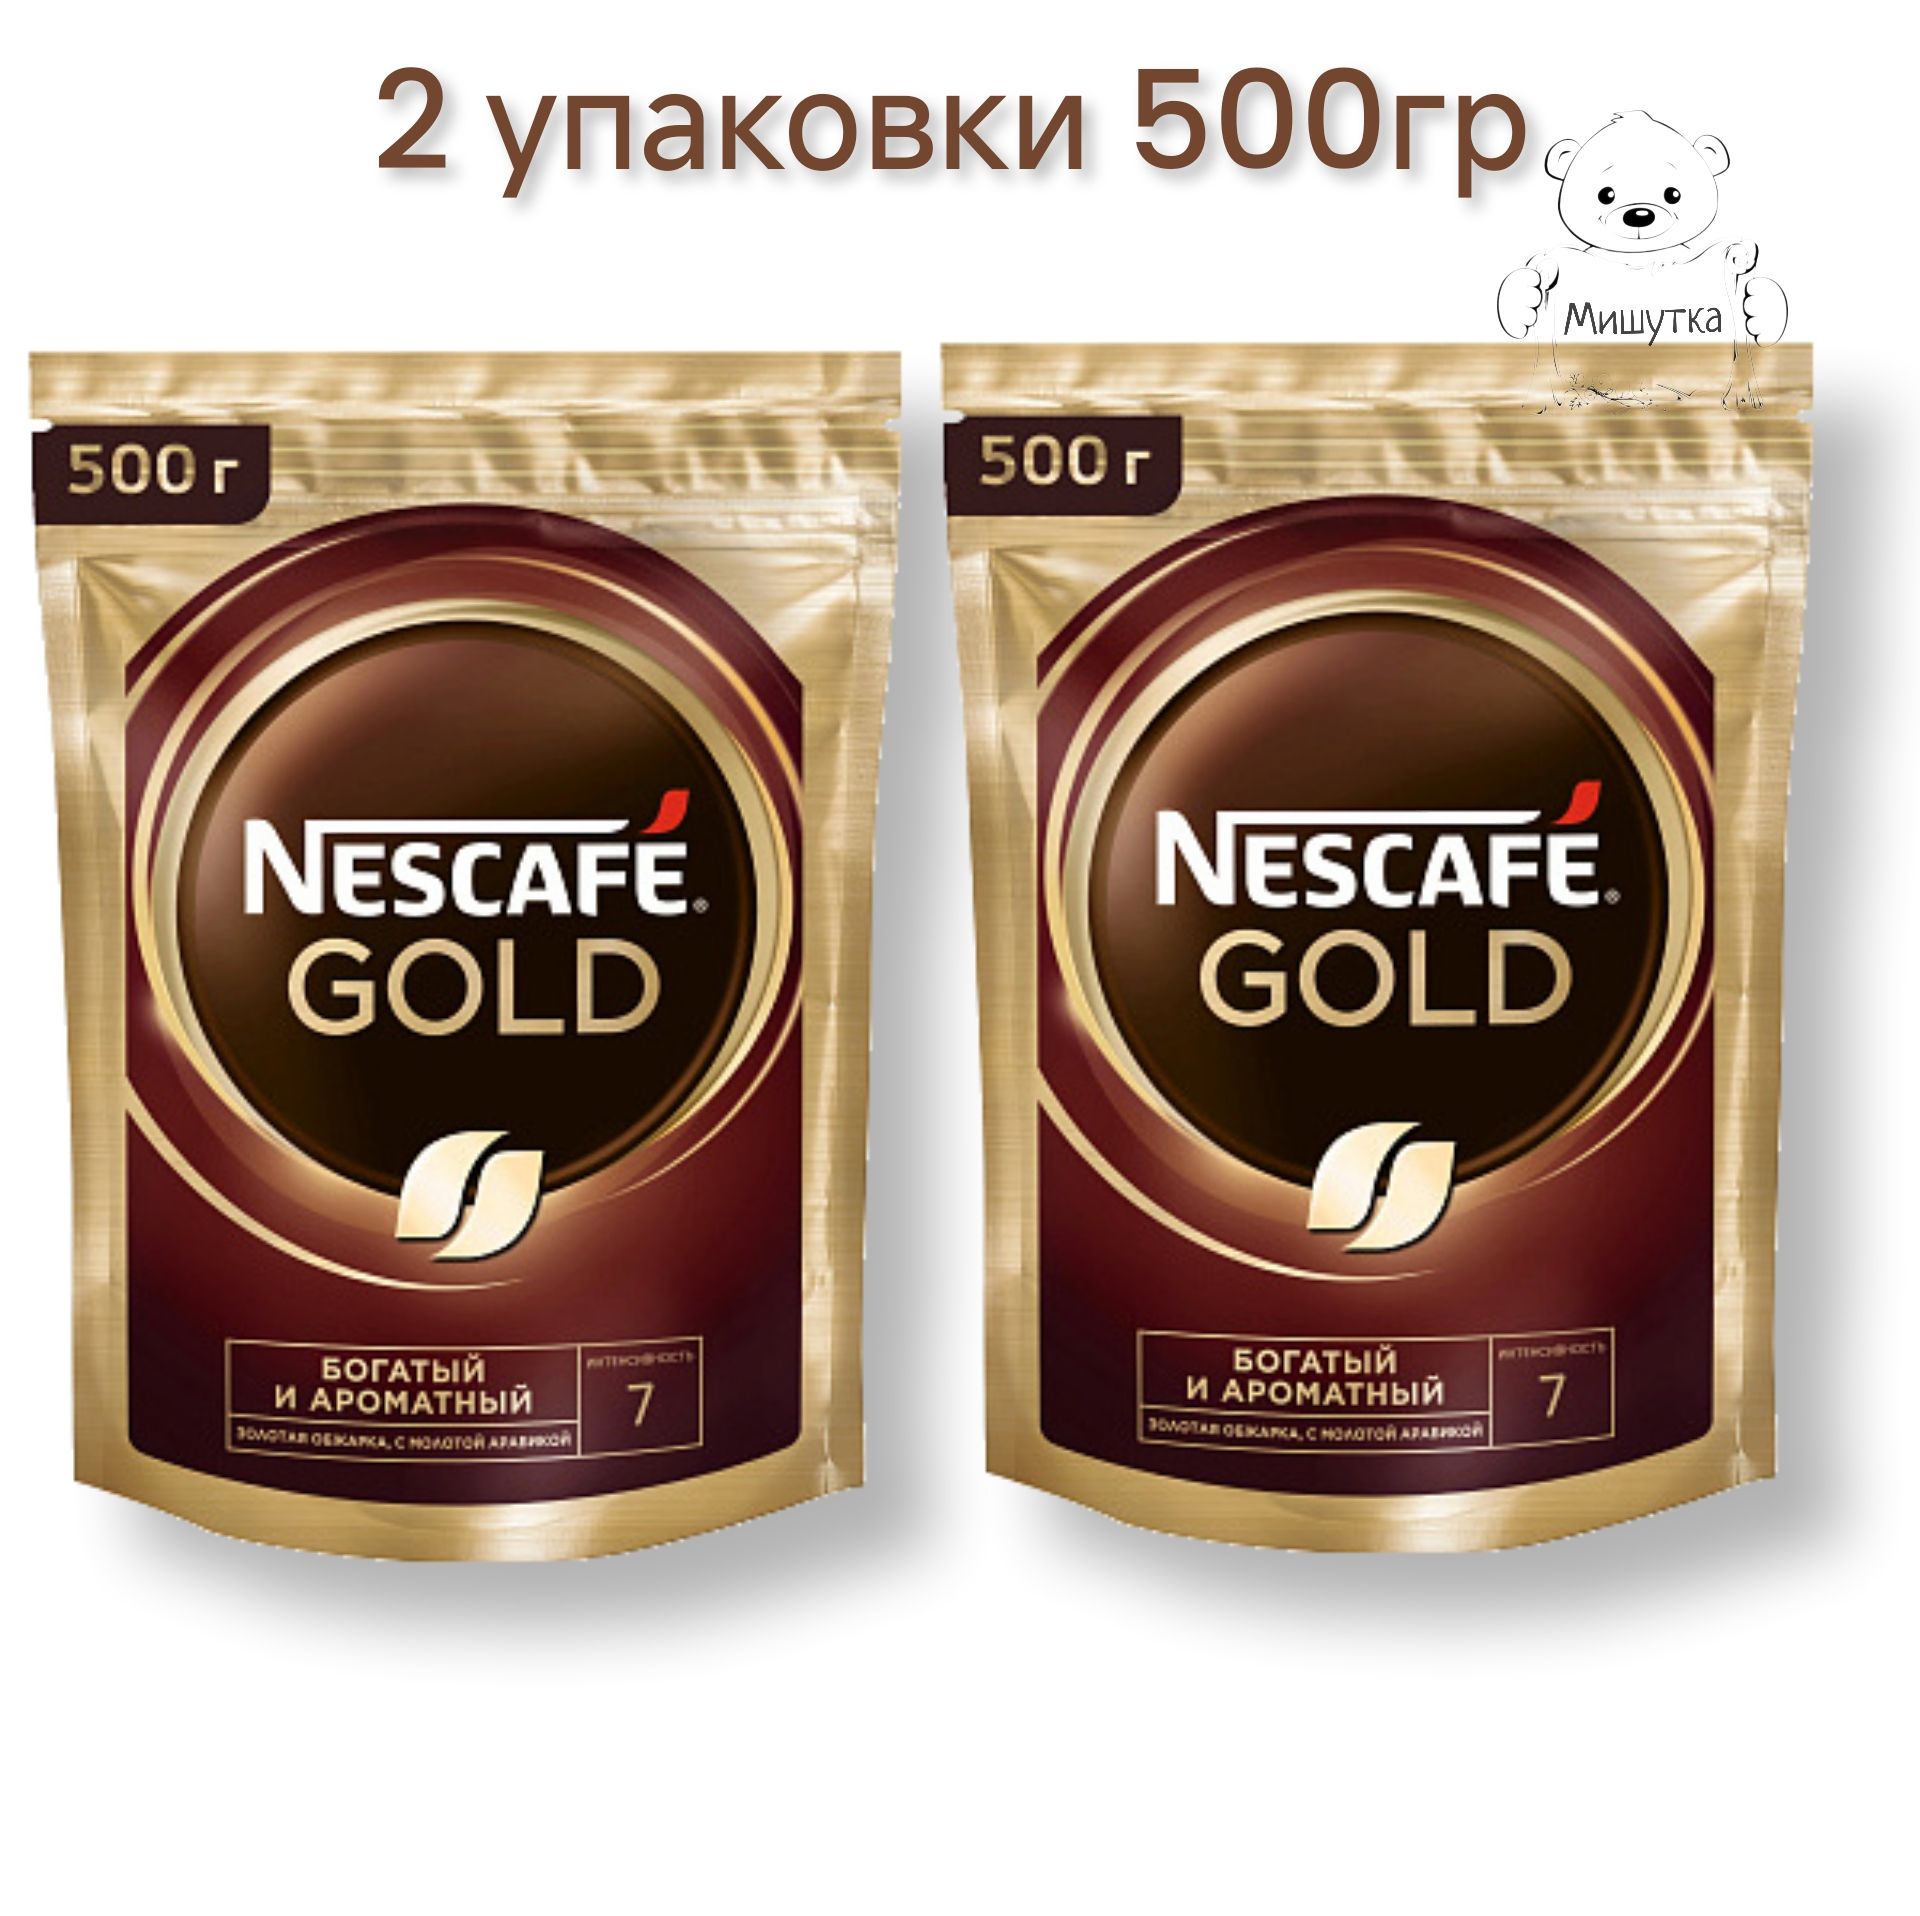 Купить nescafe растворимый кофе. Кофе Нескафе Голд 220г пакет. Кофе Нескафе Голд 2гр/30. Нескафе Голд 220 гр. Nescafe Gold 220 г.